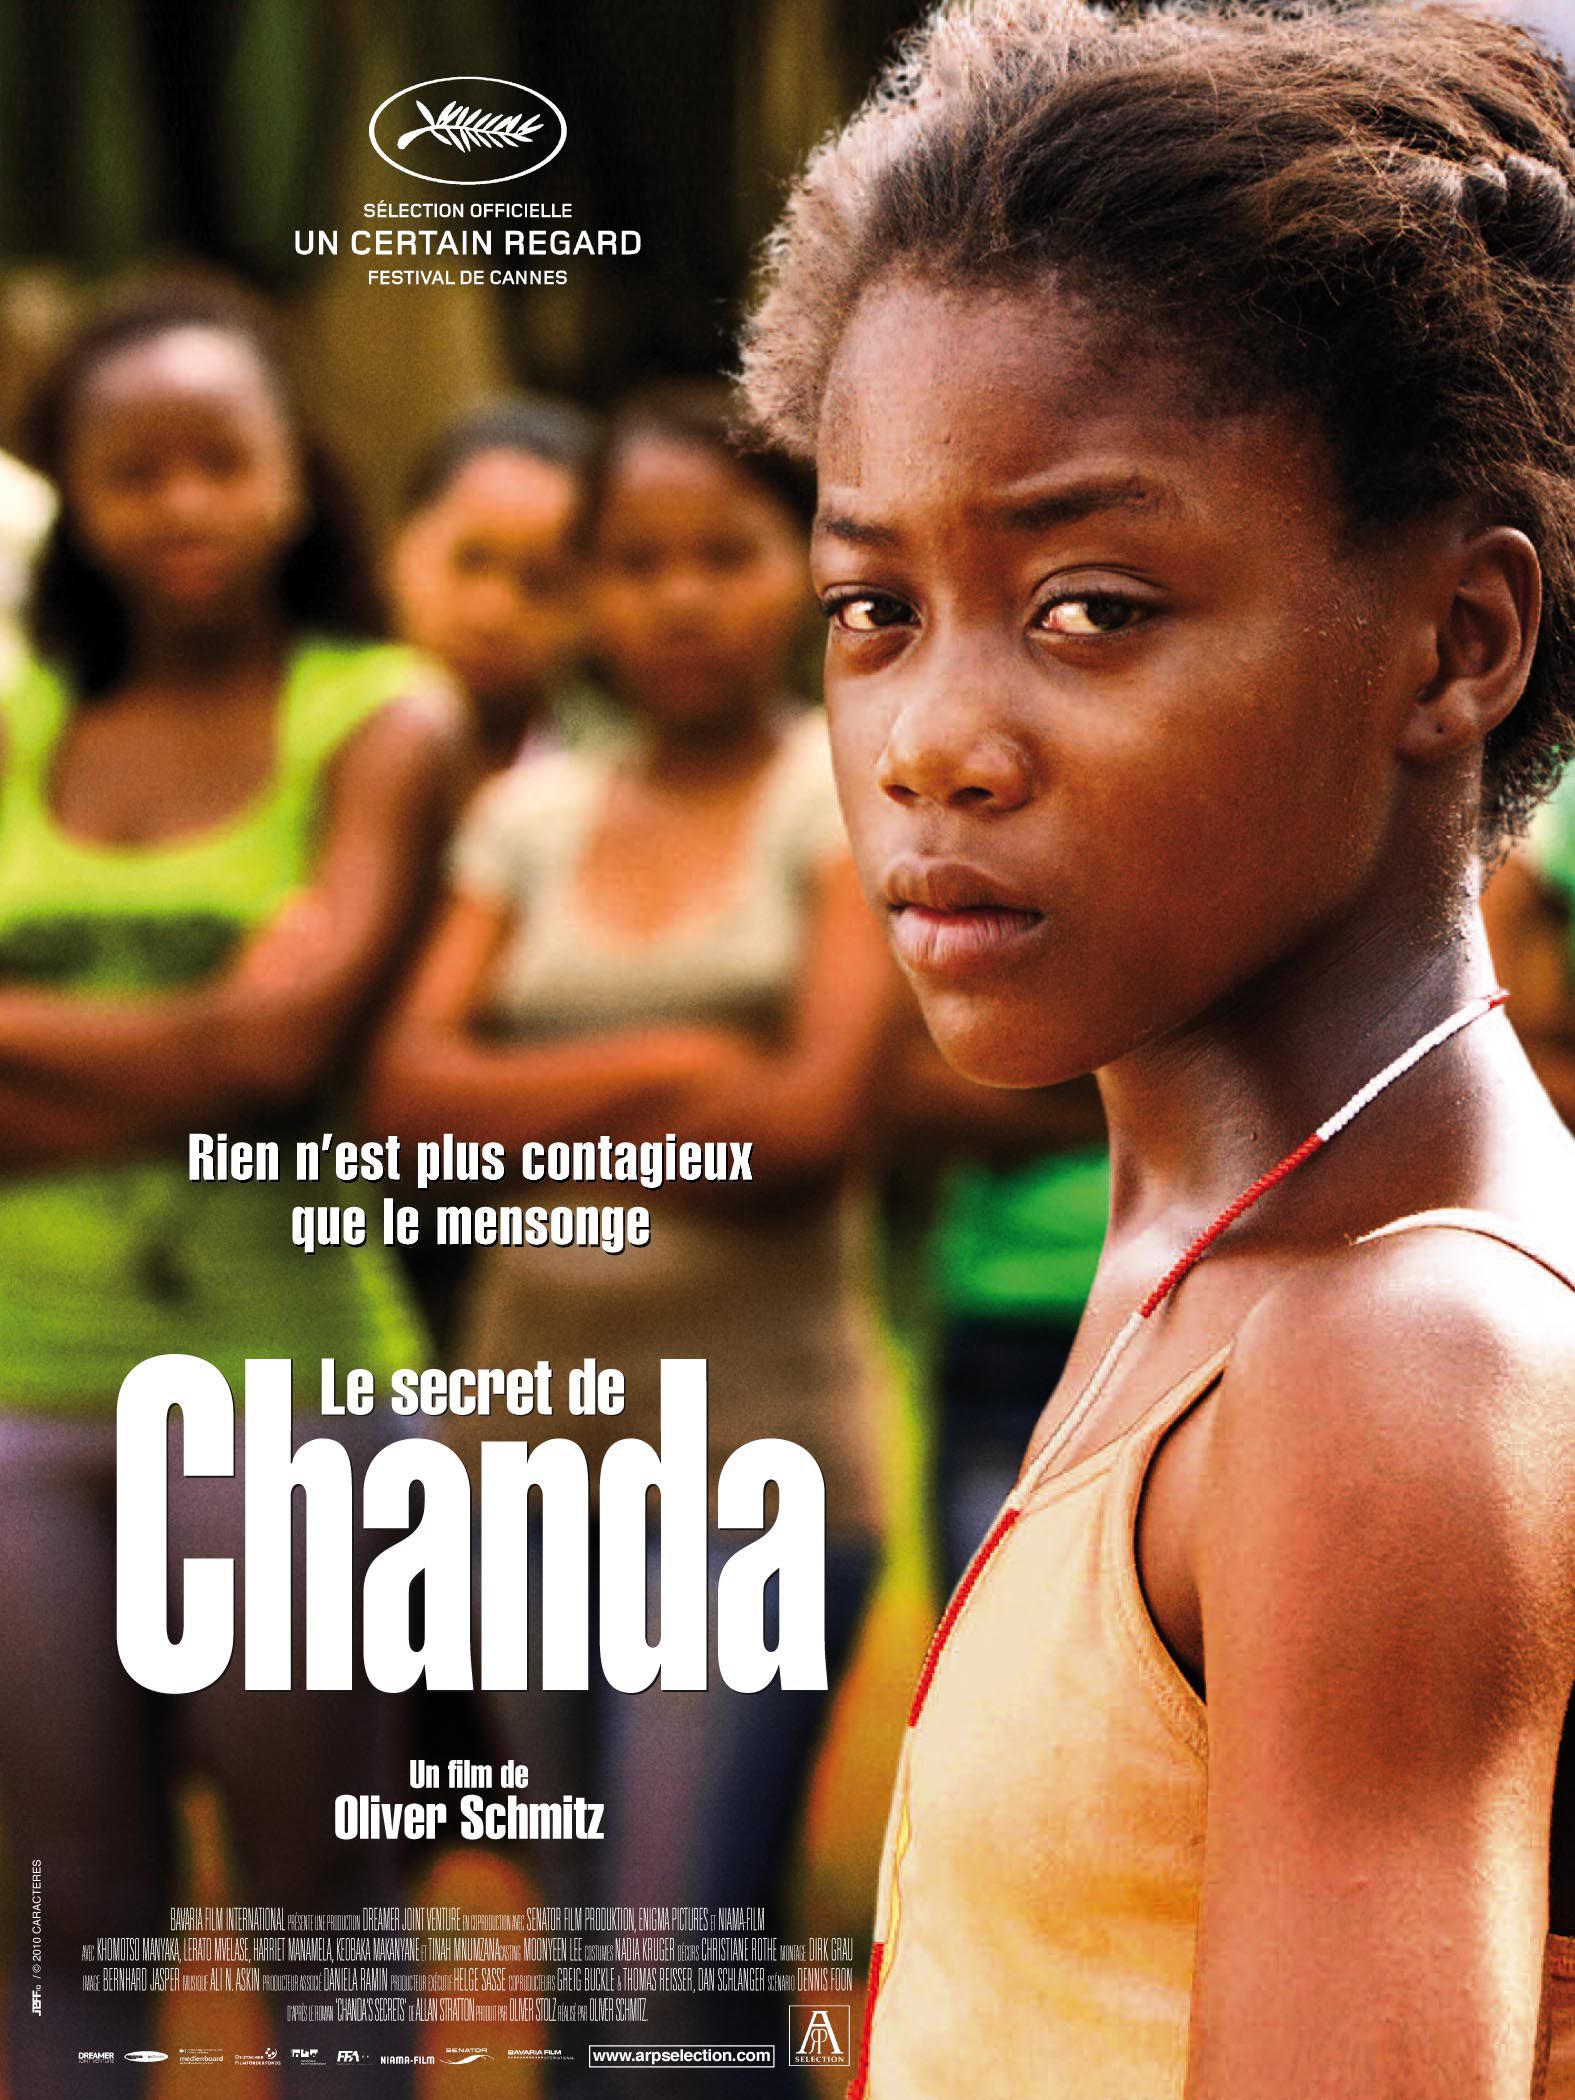 Le Secret de Chanda - Film (2010) streaming VF gratuit complet